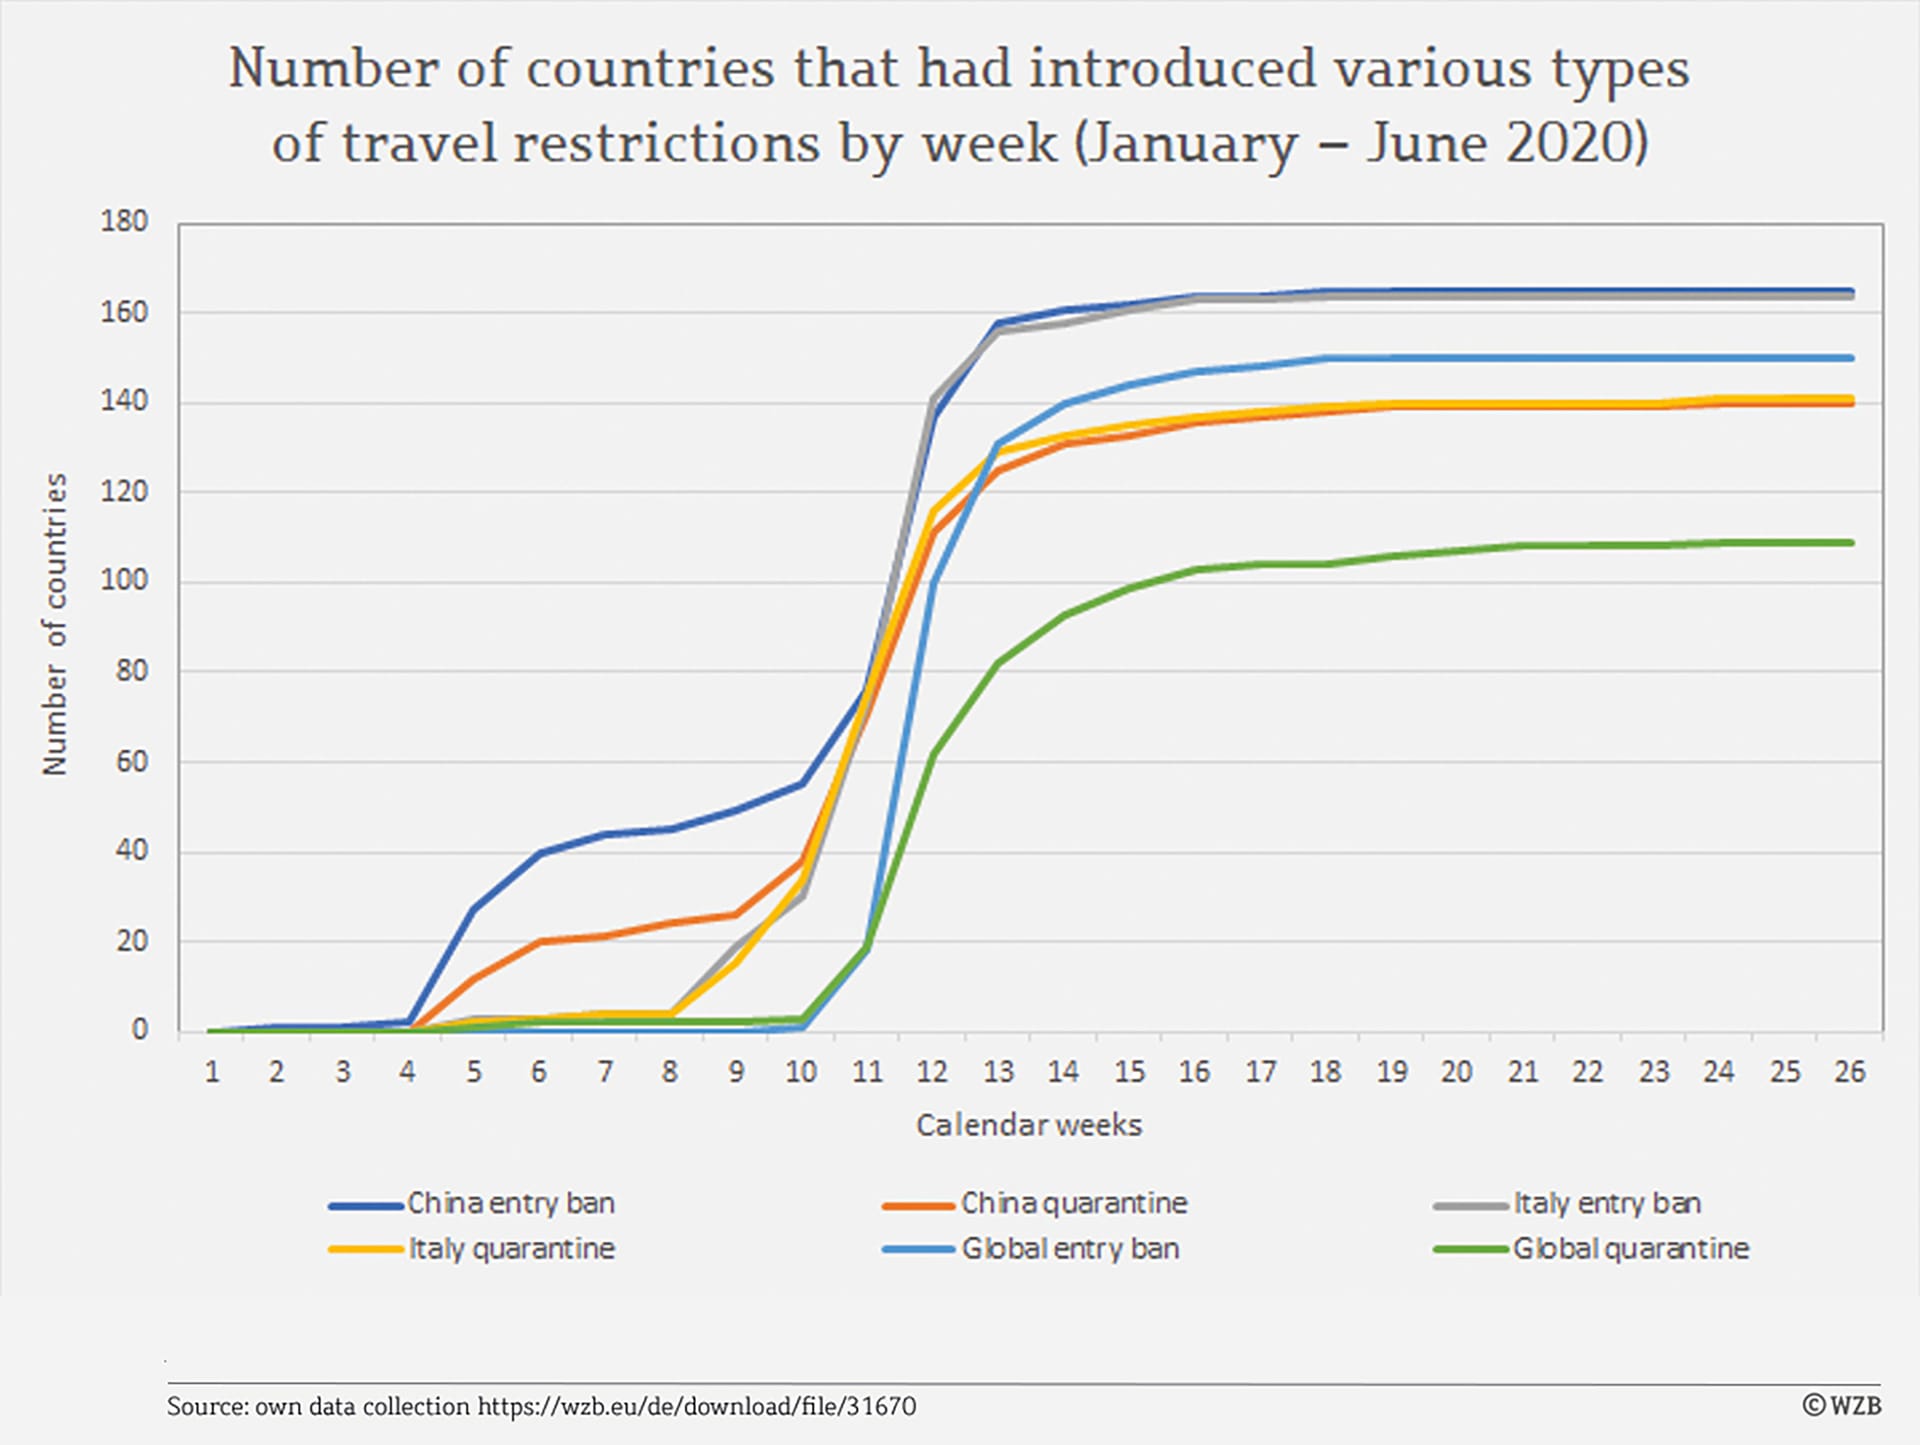 Die Grafik zeigt die Zahl der Länder, die zwischen Januar und Juni 2020 Reisebeschränkungen unterschiedlicher Art einführten.